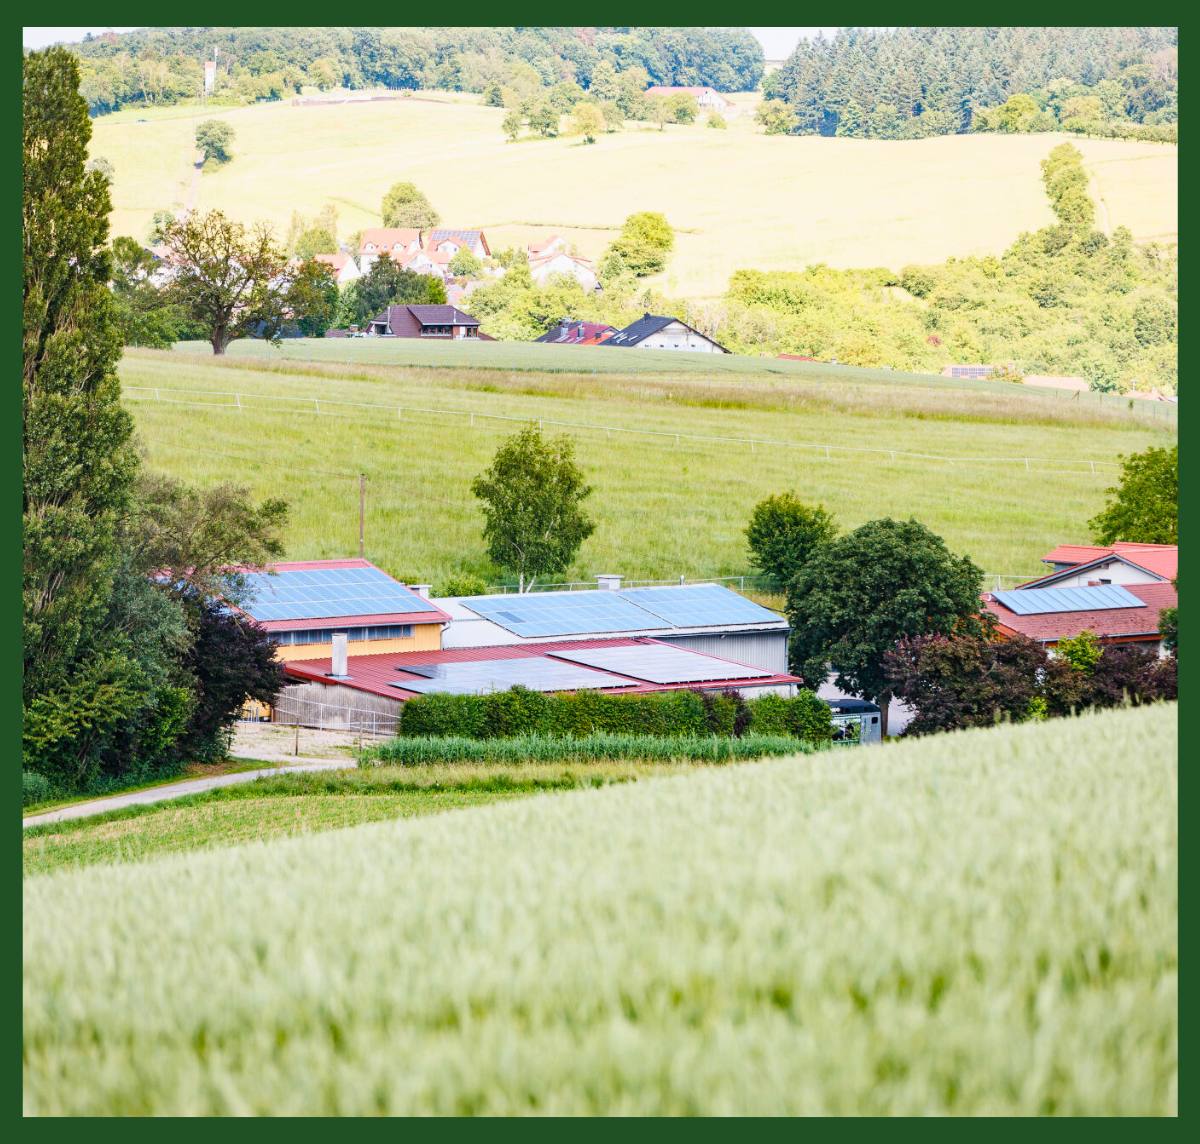 Blick auf das HBD-Unternehmensgelände, umgeben von Feldern und Hügeln in einer ländlichen Umgebung.